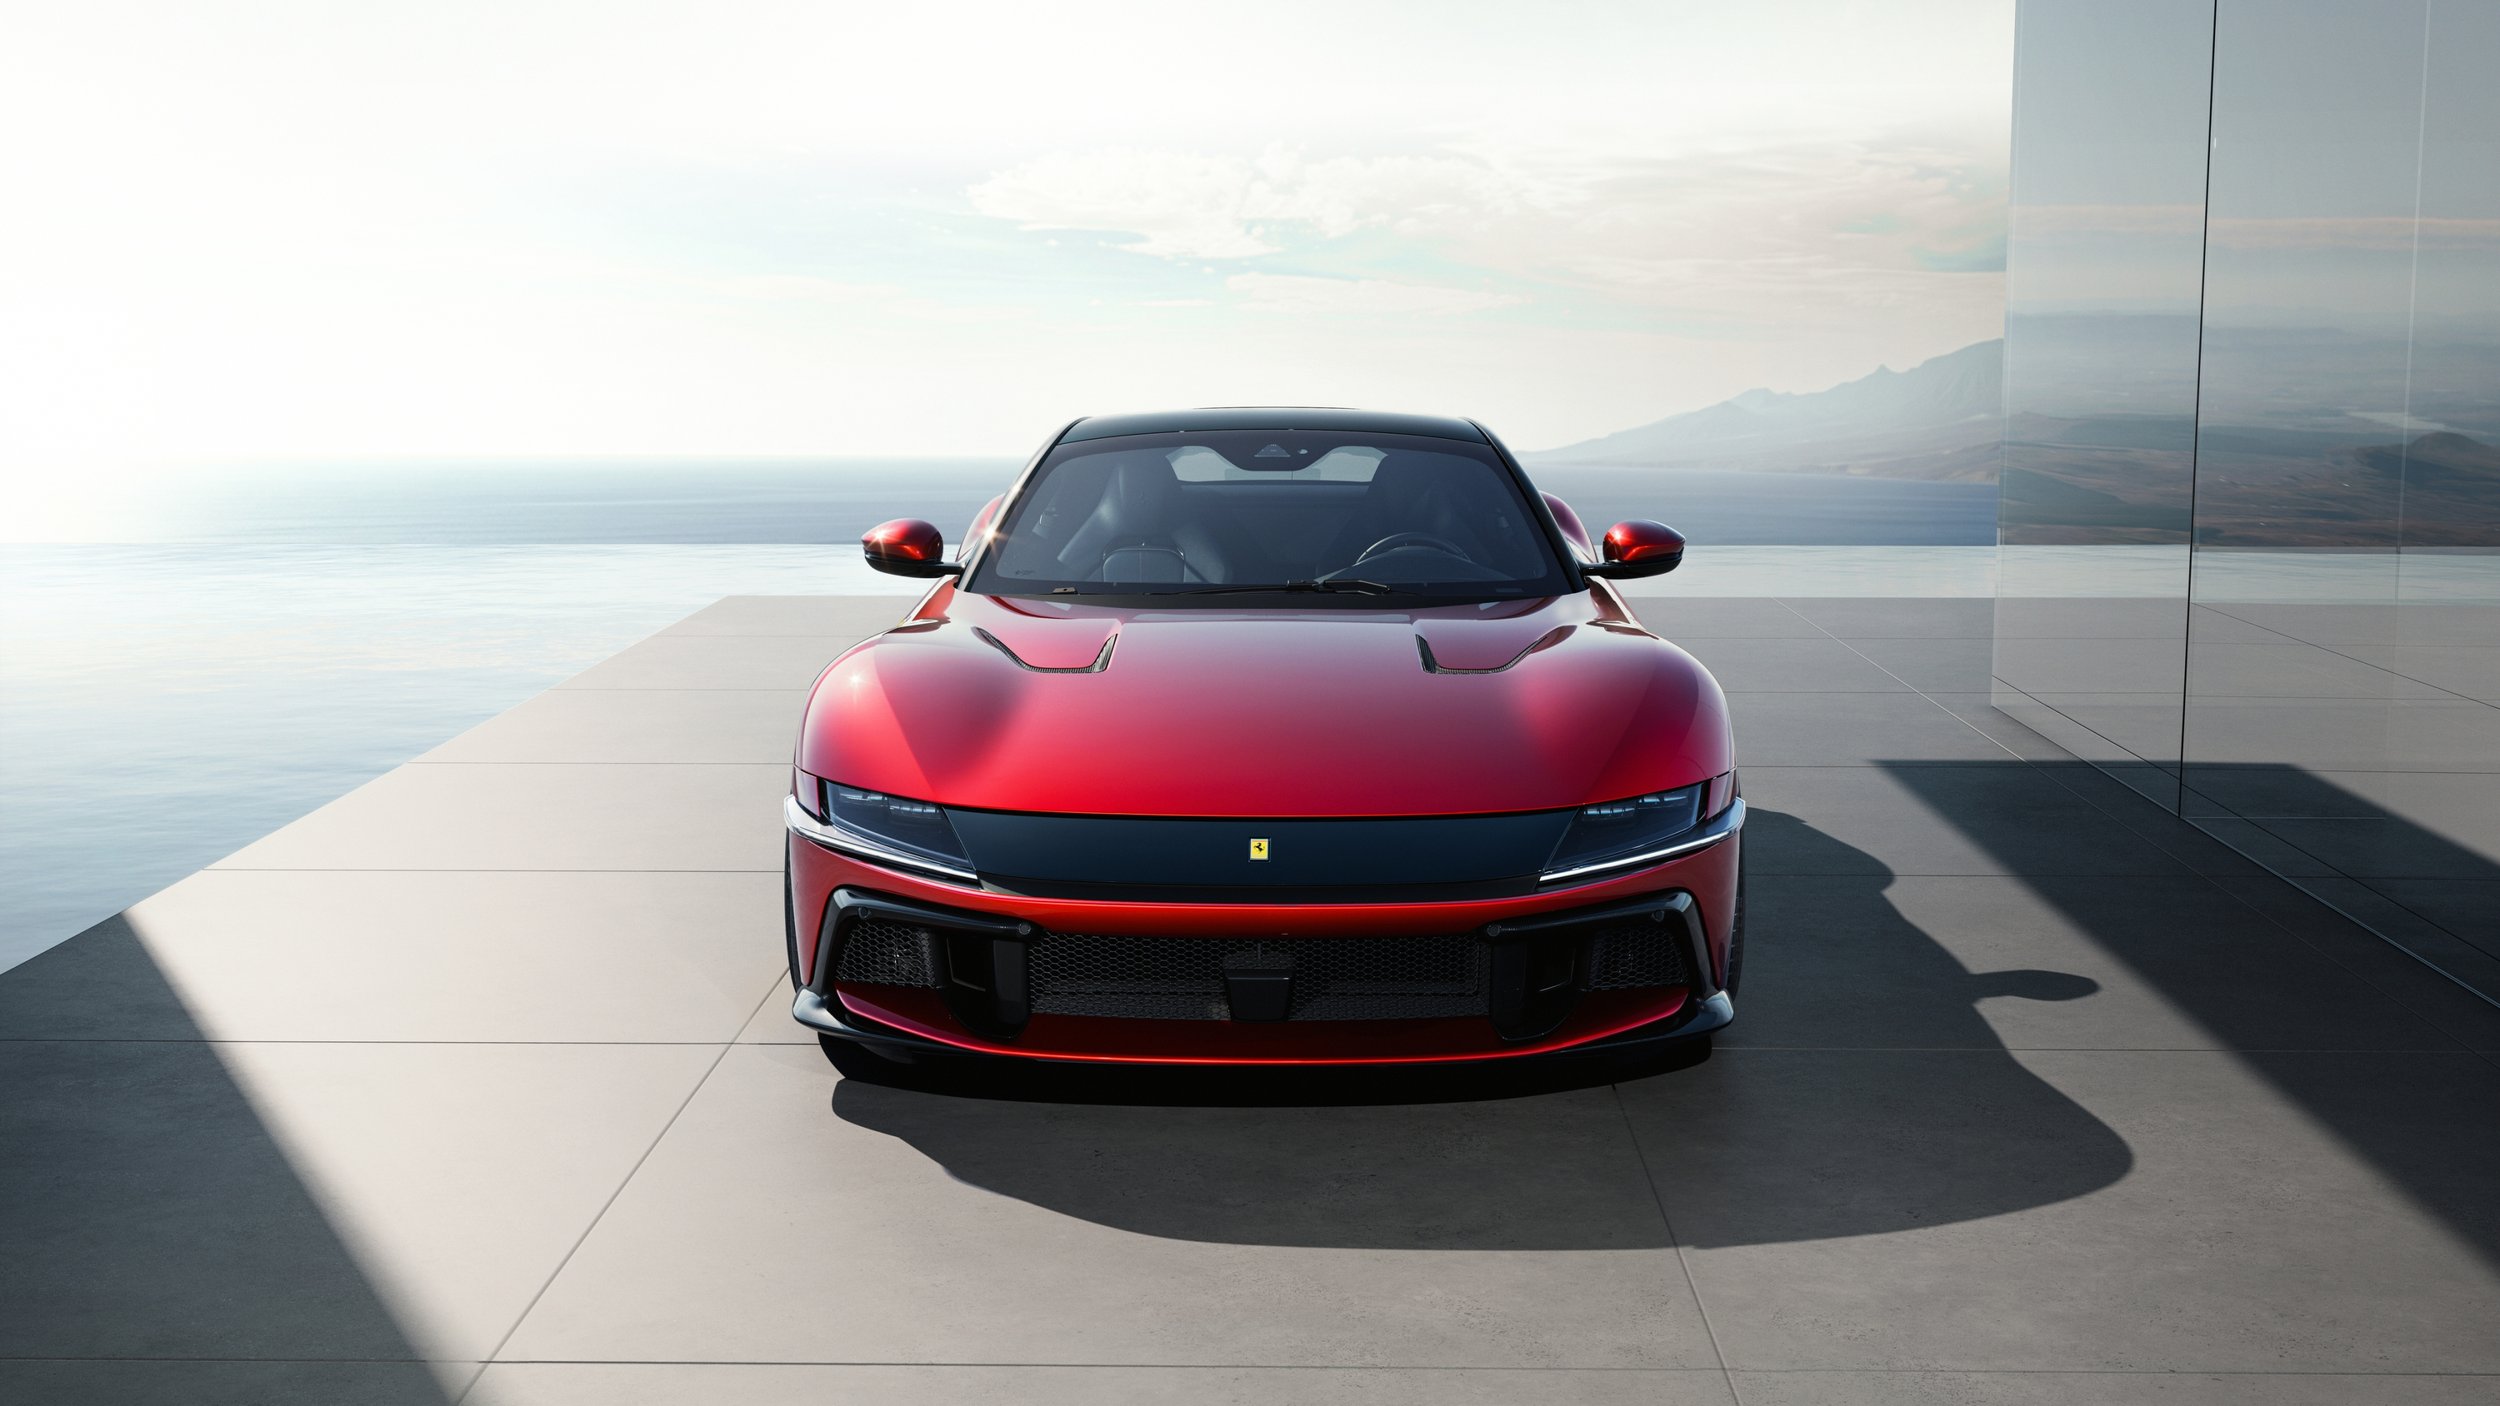 New_Ferrari_V12_ext_05_Design_red_media.jpg